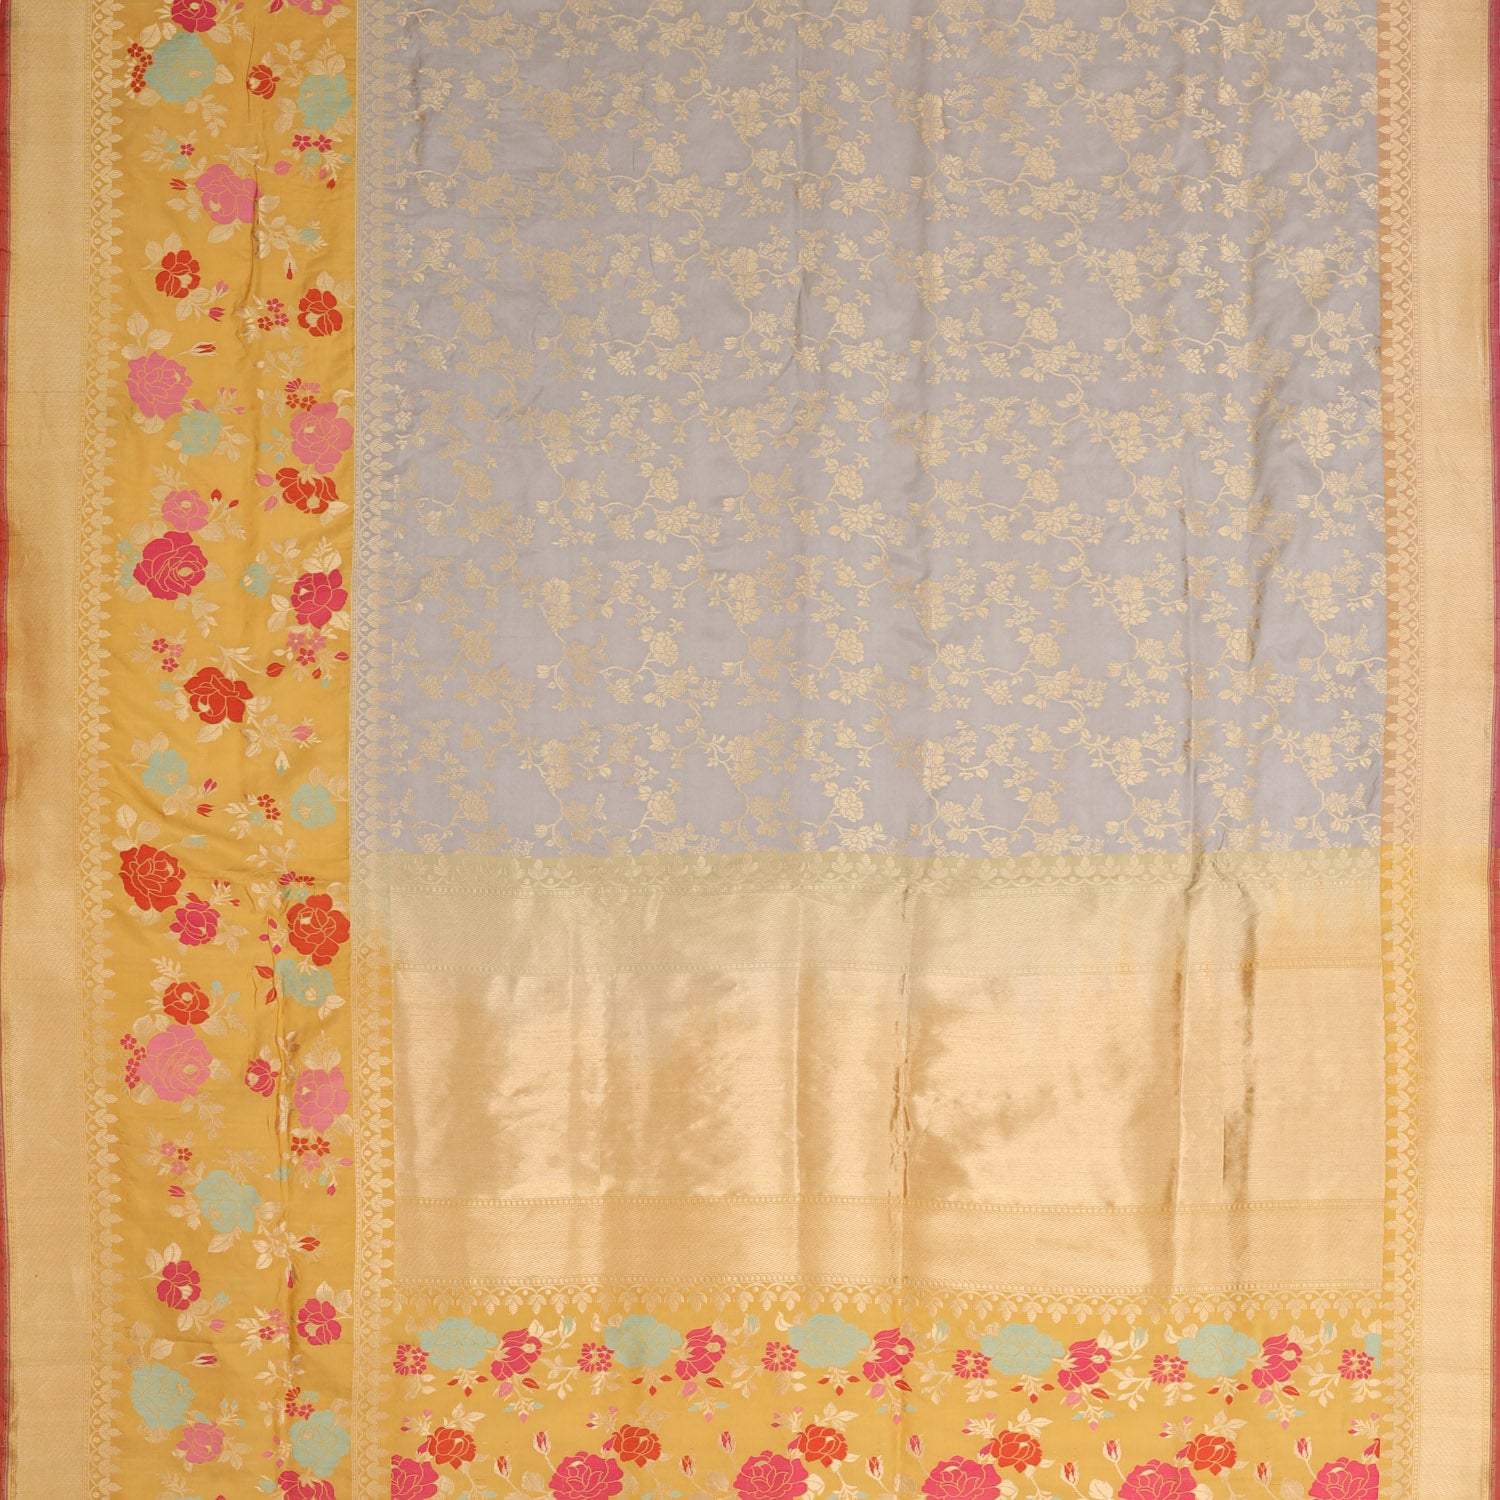 Light Grey Banarasi Silk Saree With Floral Motif Pattern - Singhania's